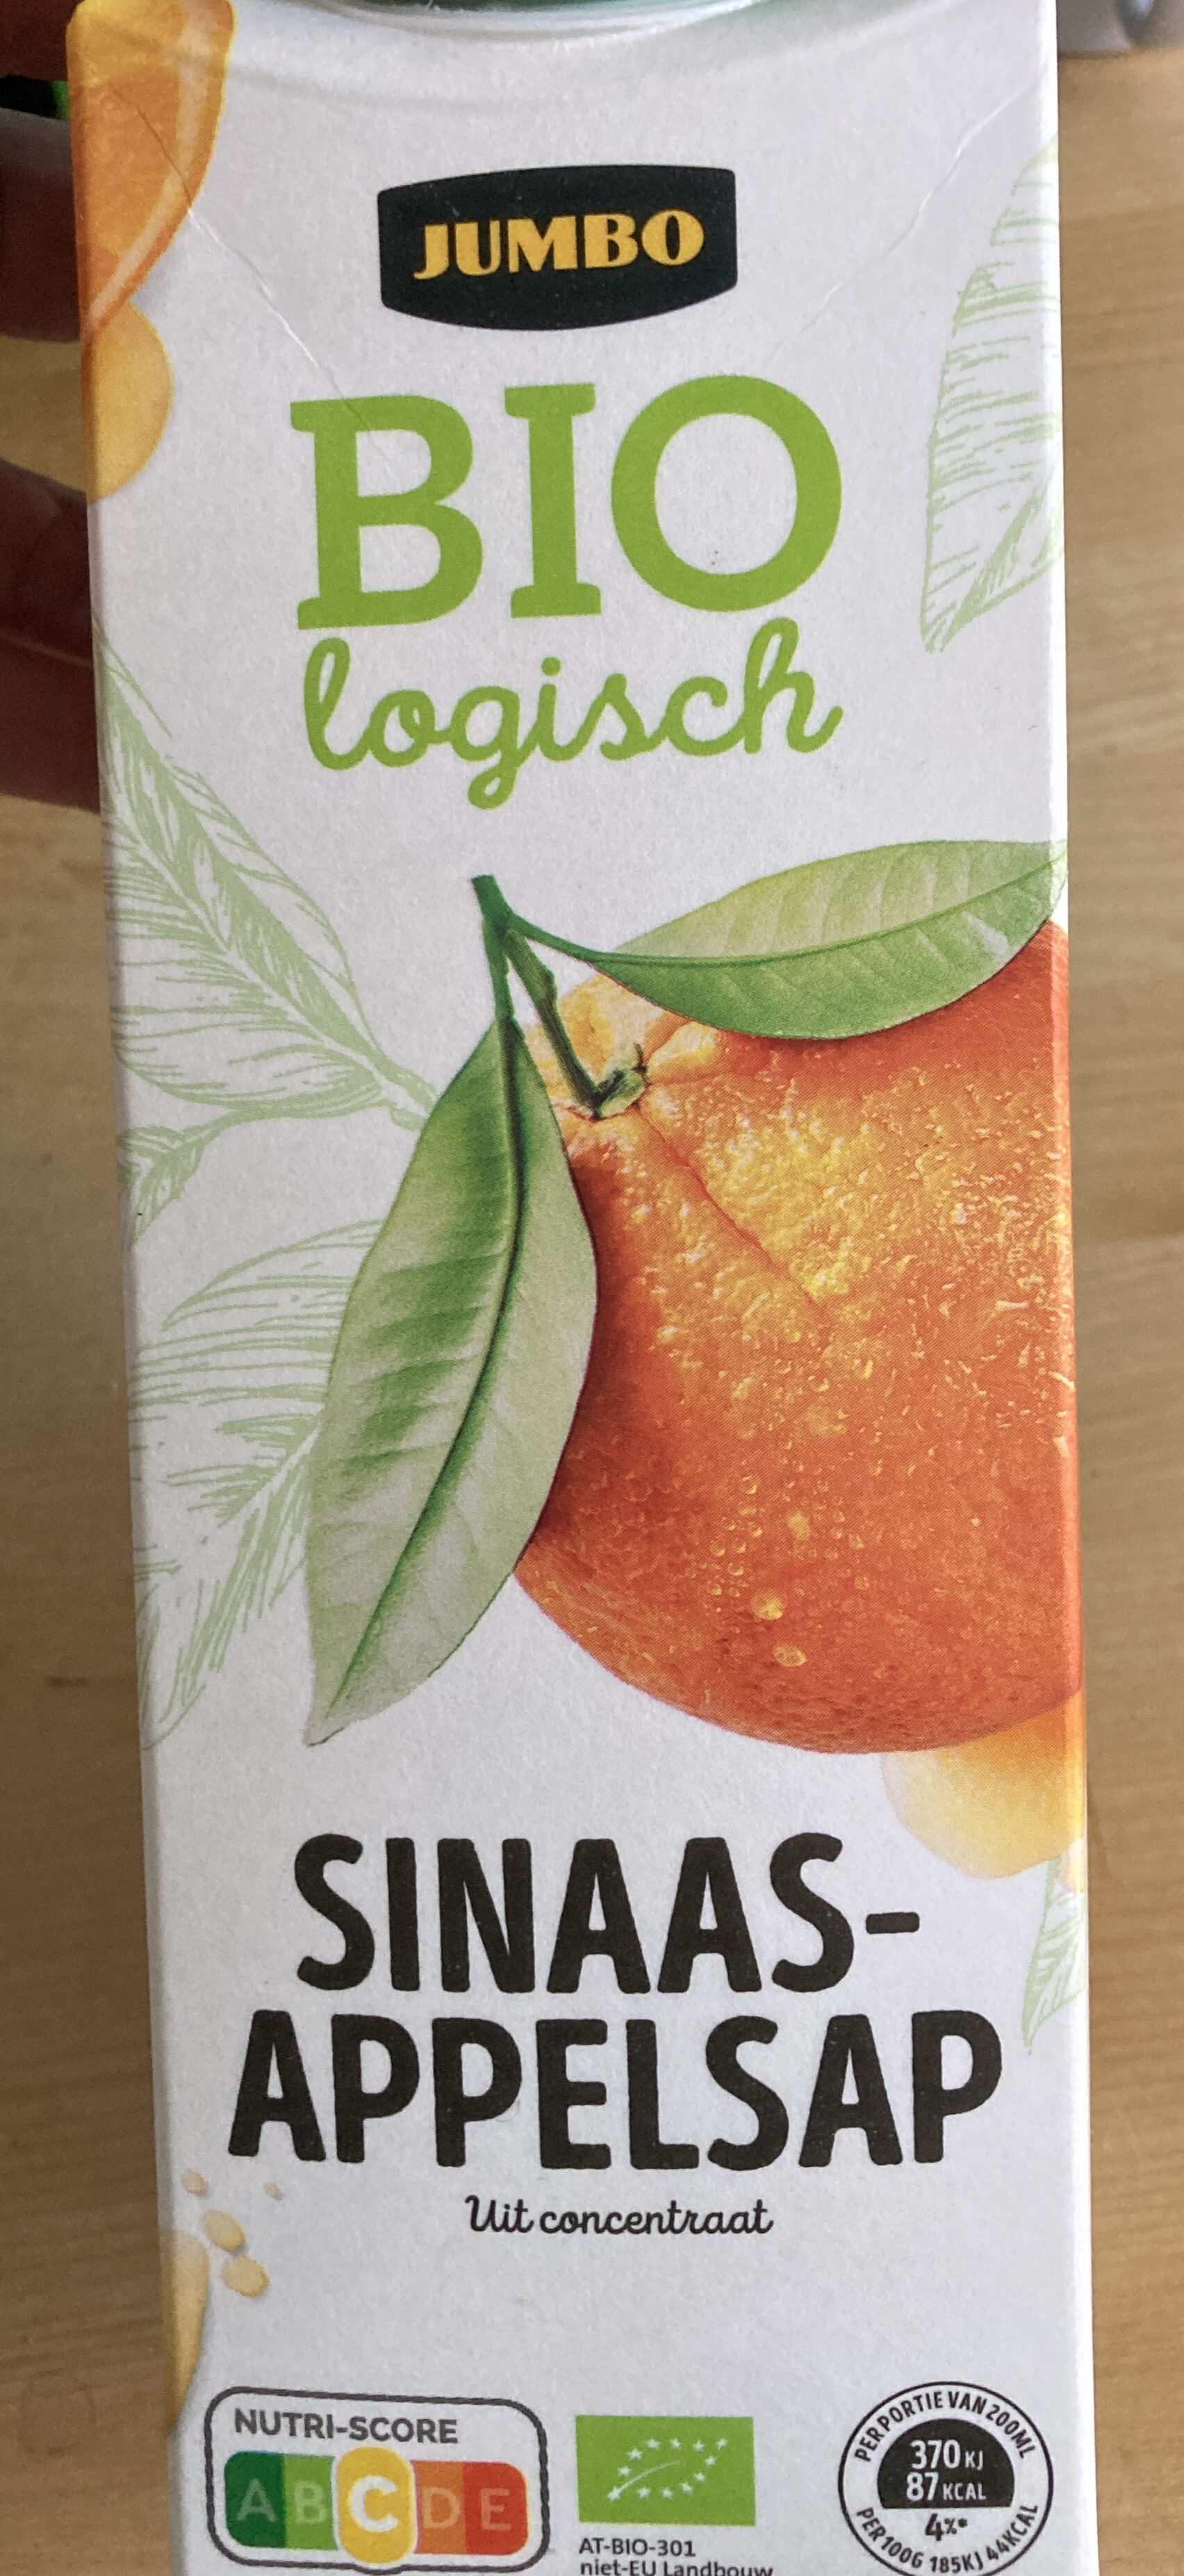 Jumbo Biologisch Sinaasappelsap uit concentraat - Product